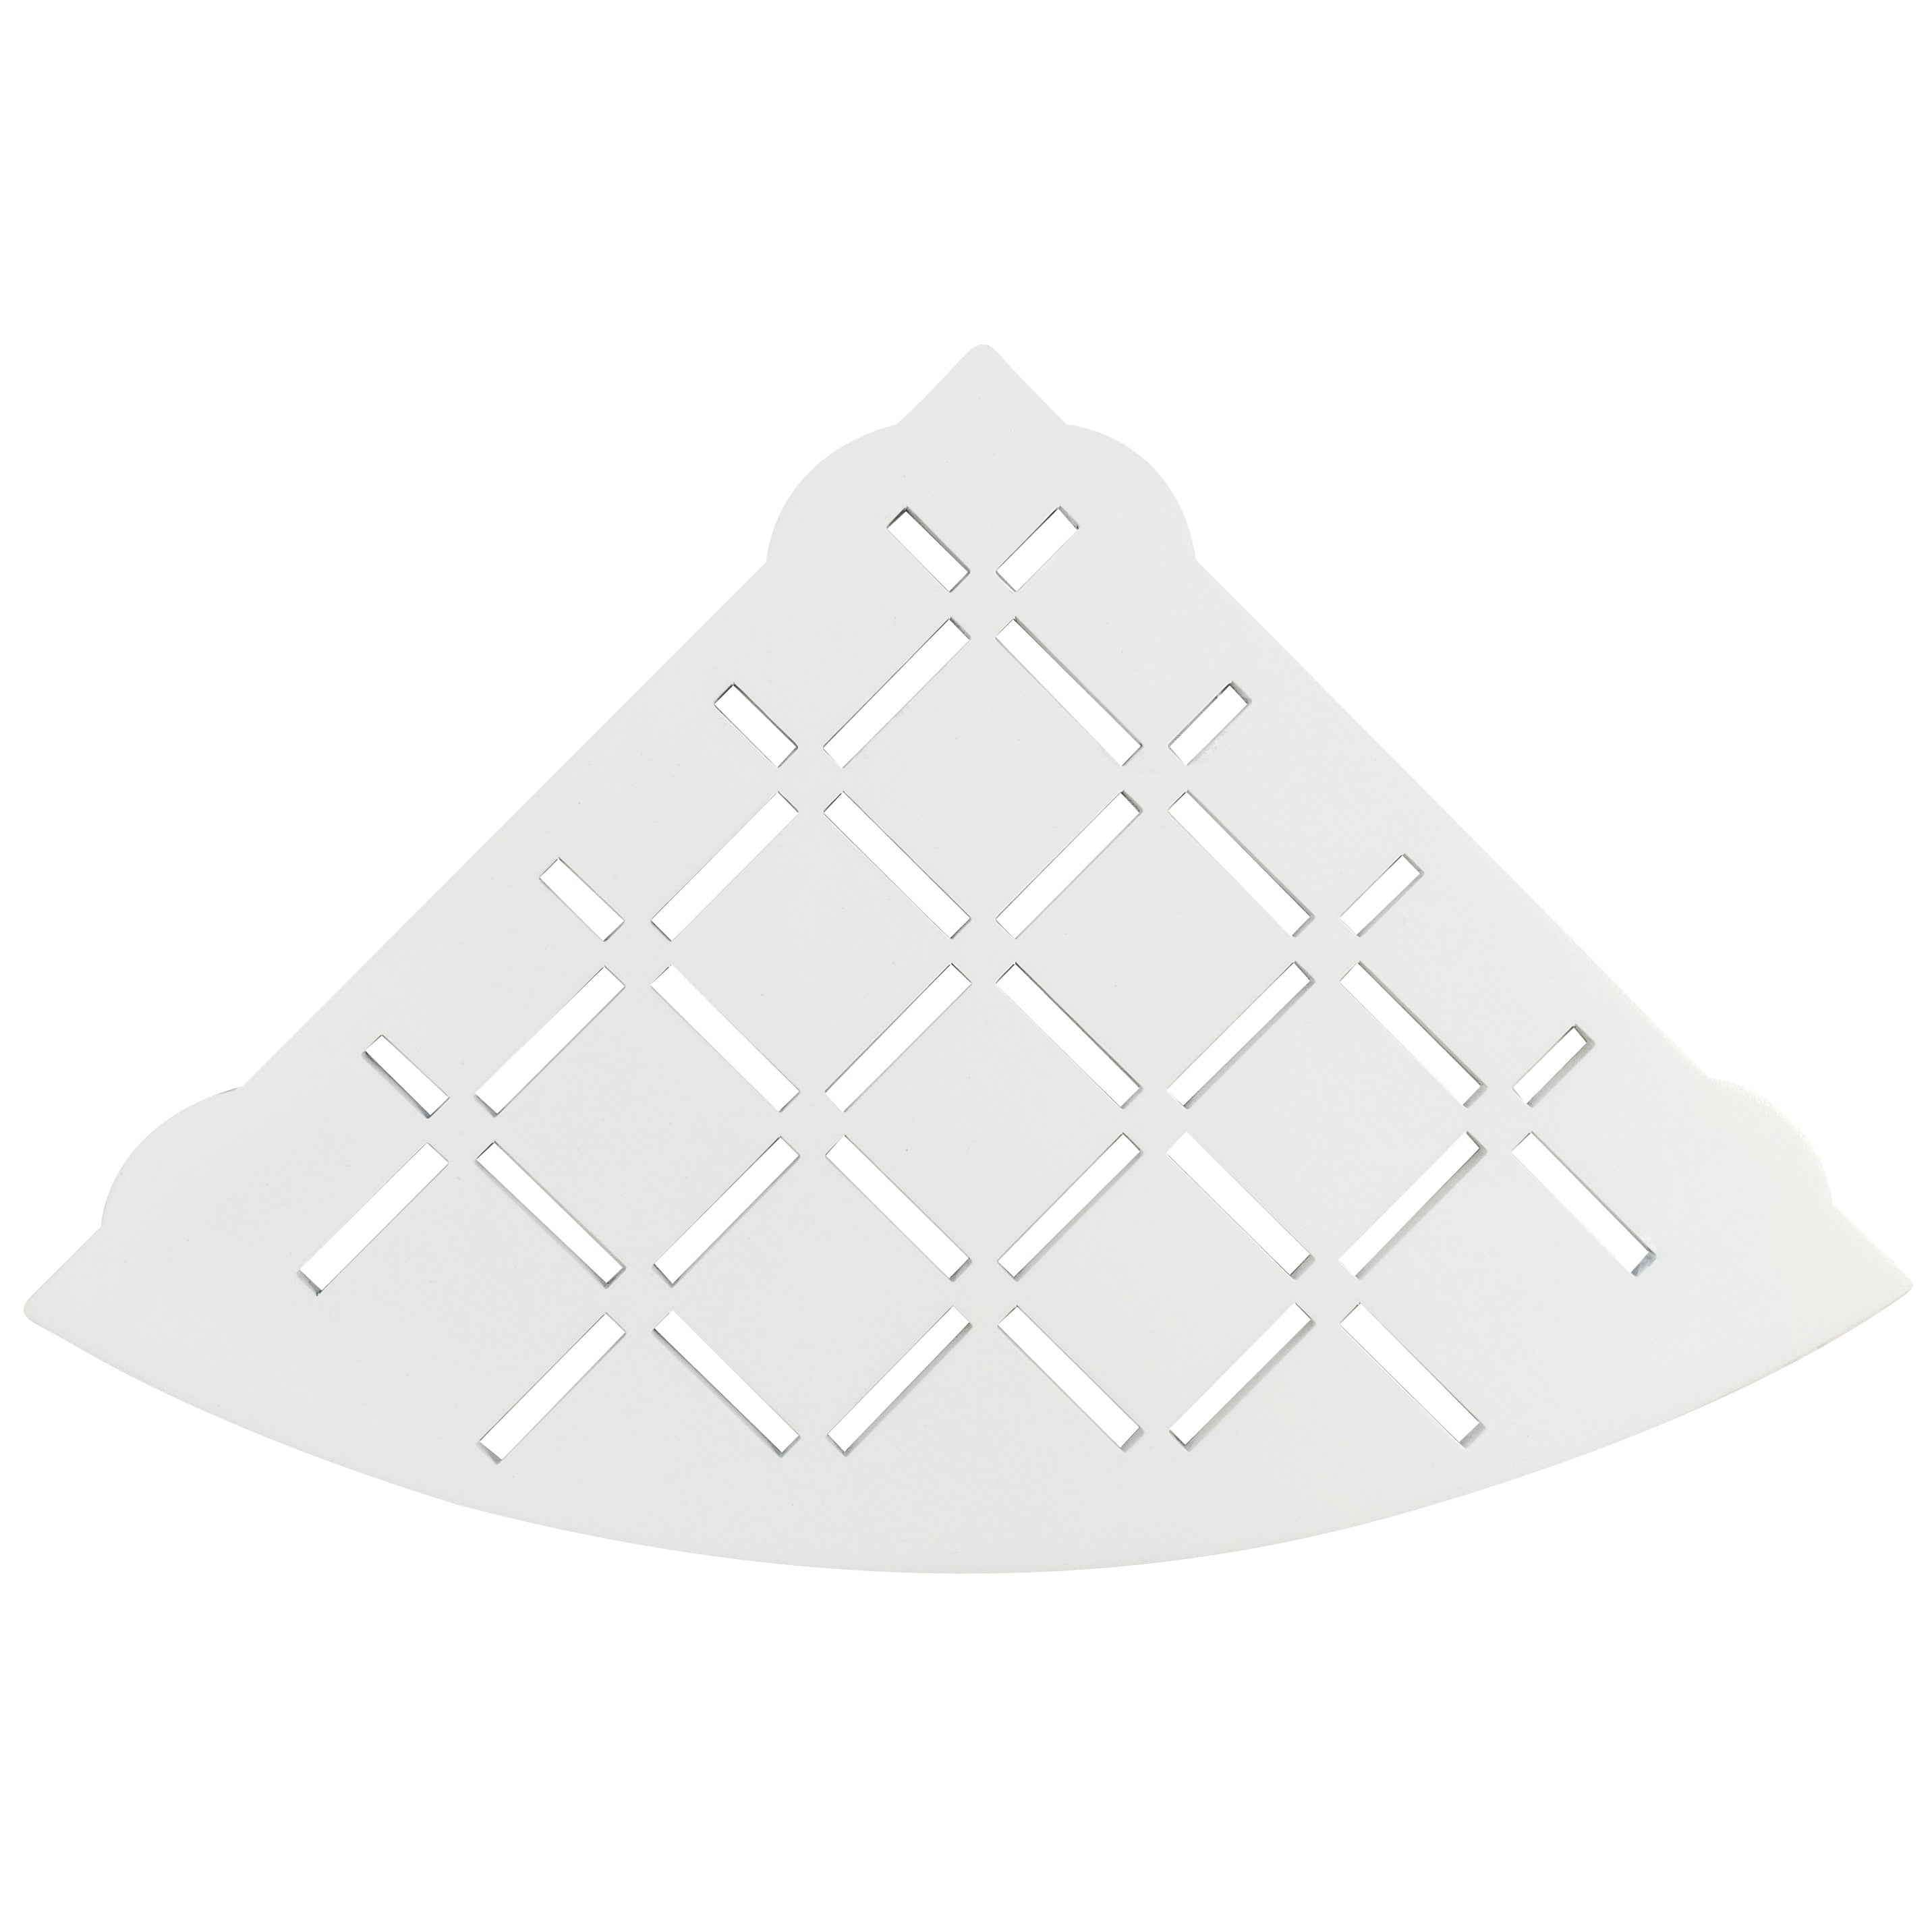 Stainless Steel Shower Shelf, Corner - Quadrant (White)